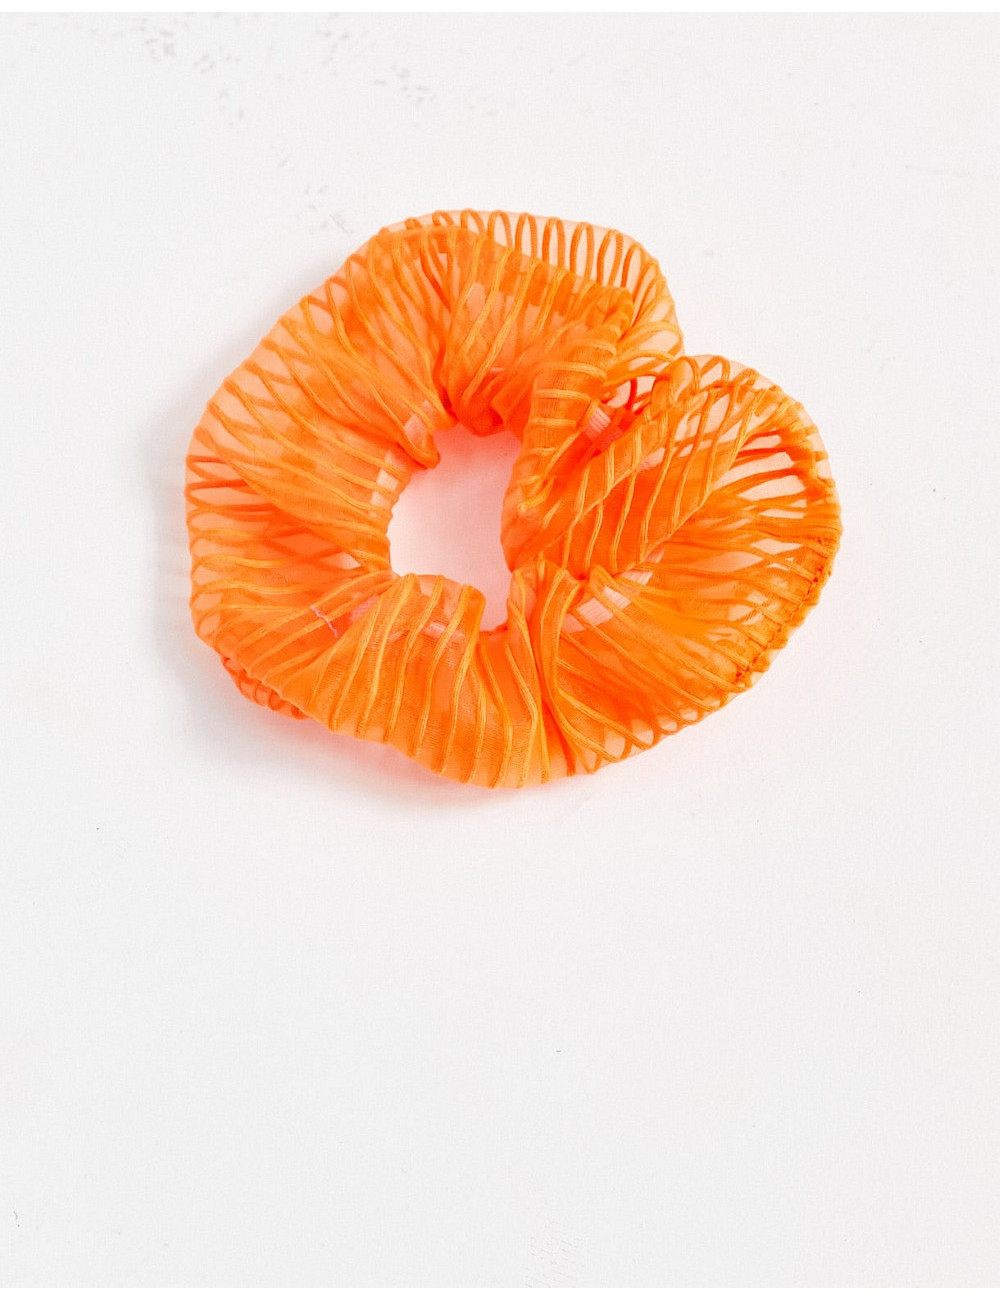 Topshop scrunchie in orange...